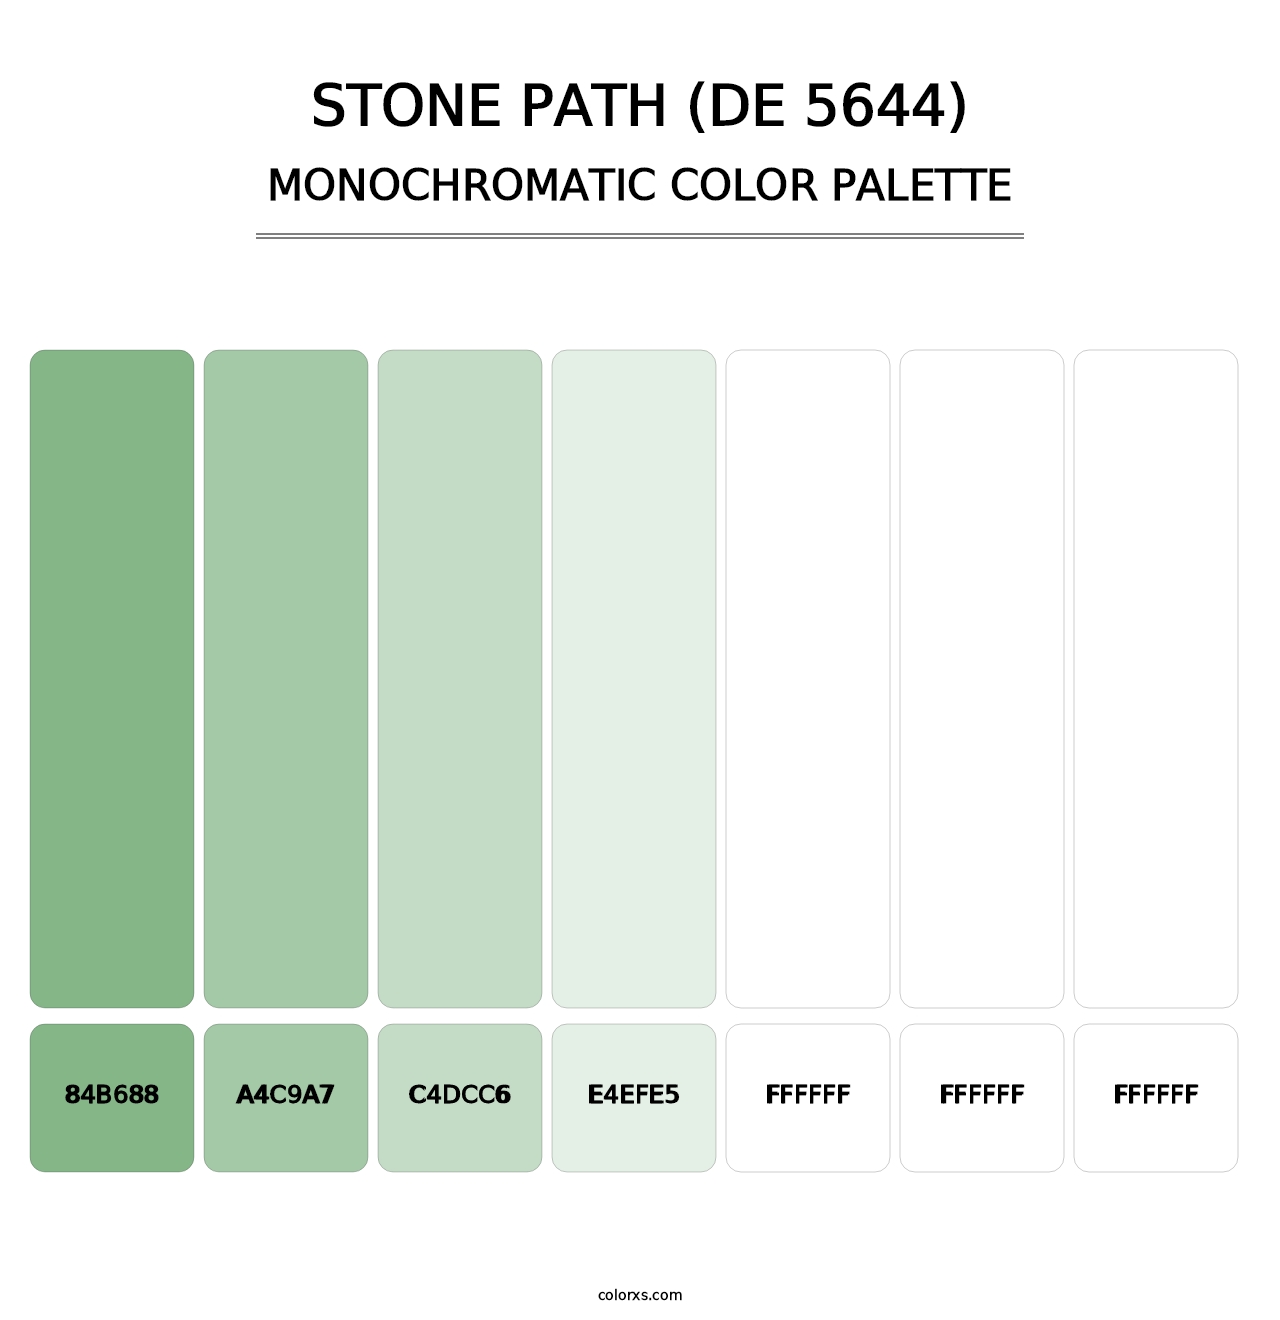 Stone Path (DE 5644) - Monochromatic Color Palette